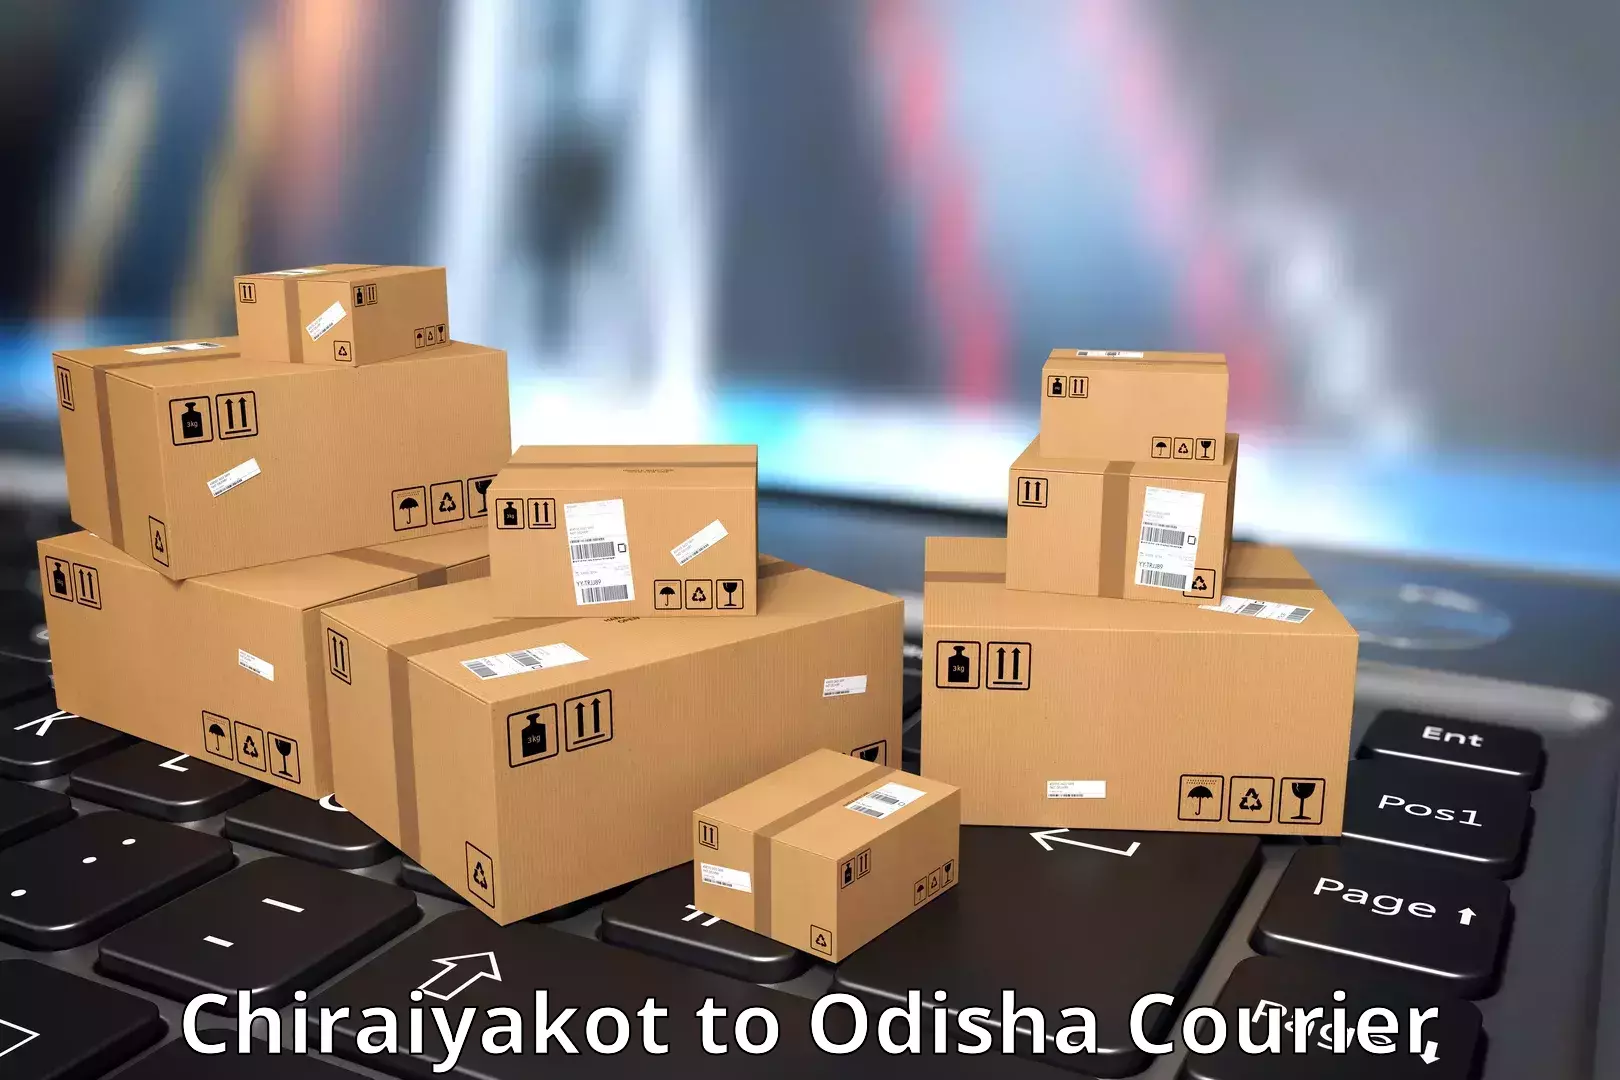 Subscription-based courier Chiraiyakot to Odisha